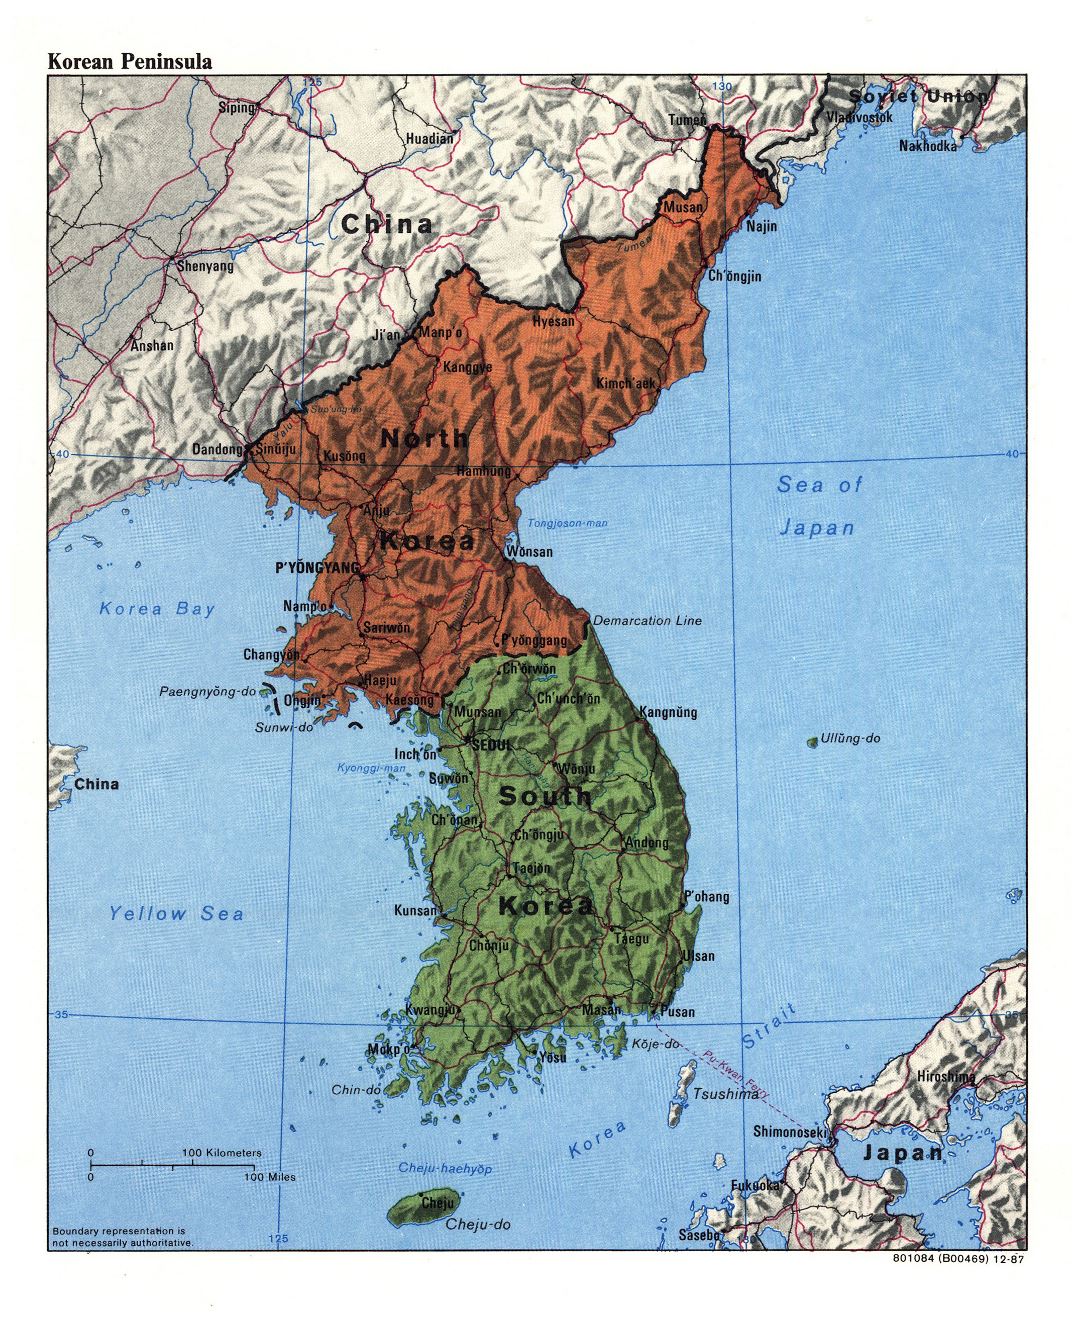 Grande detallado mapa político de la Península de Corea con relieve, carreteras, ferrocarriles y principales ciudades - 1987